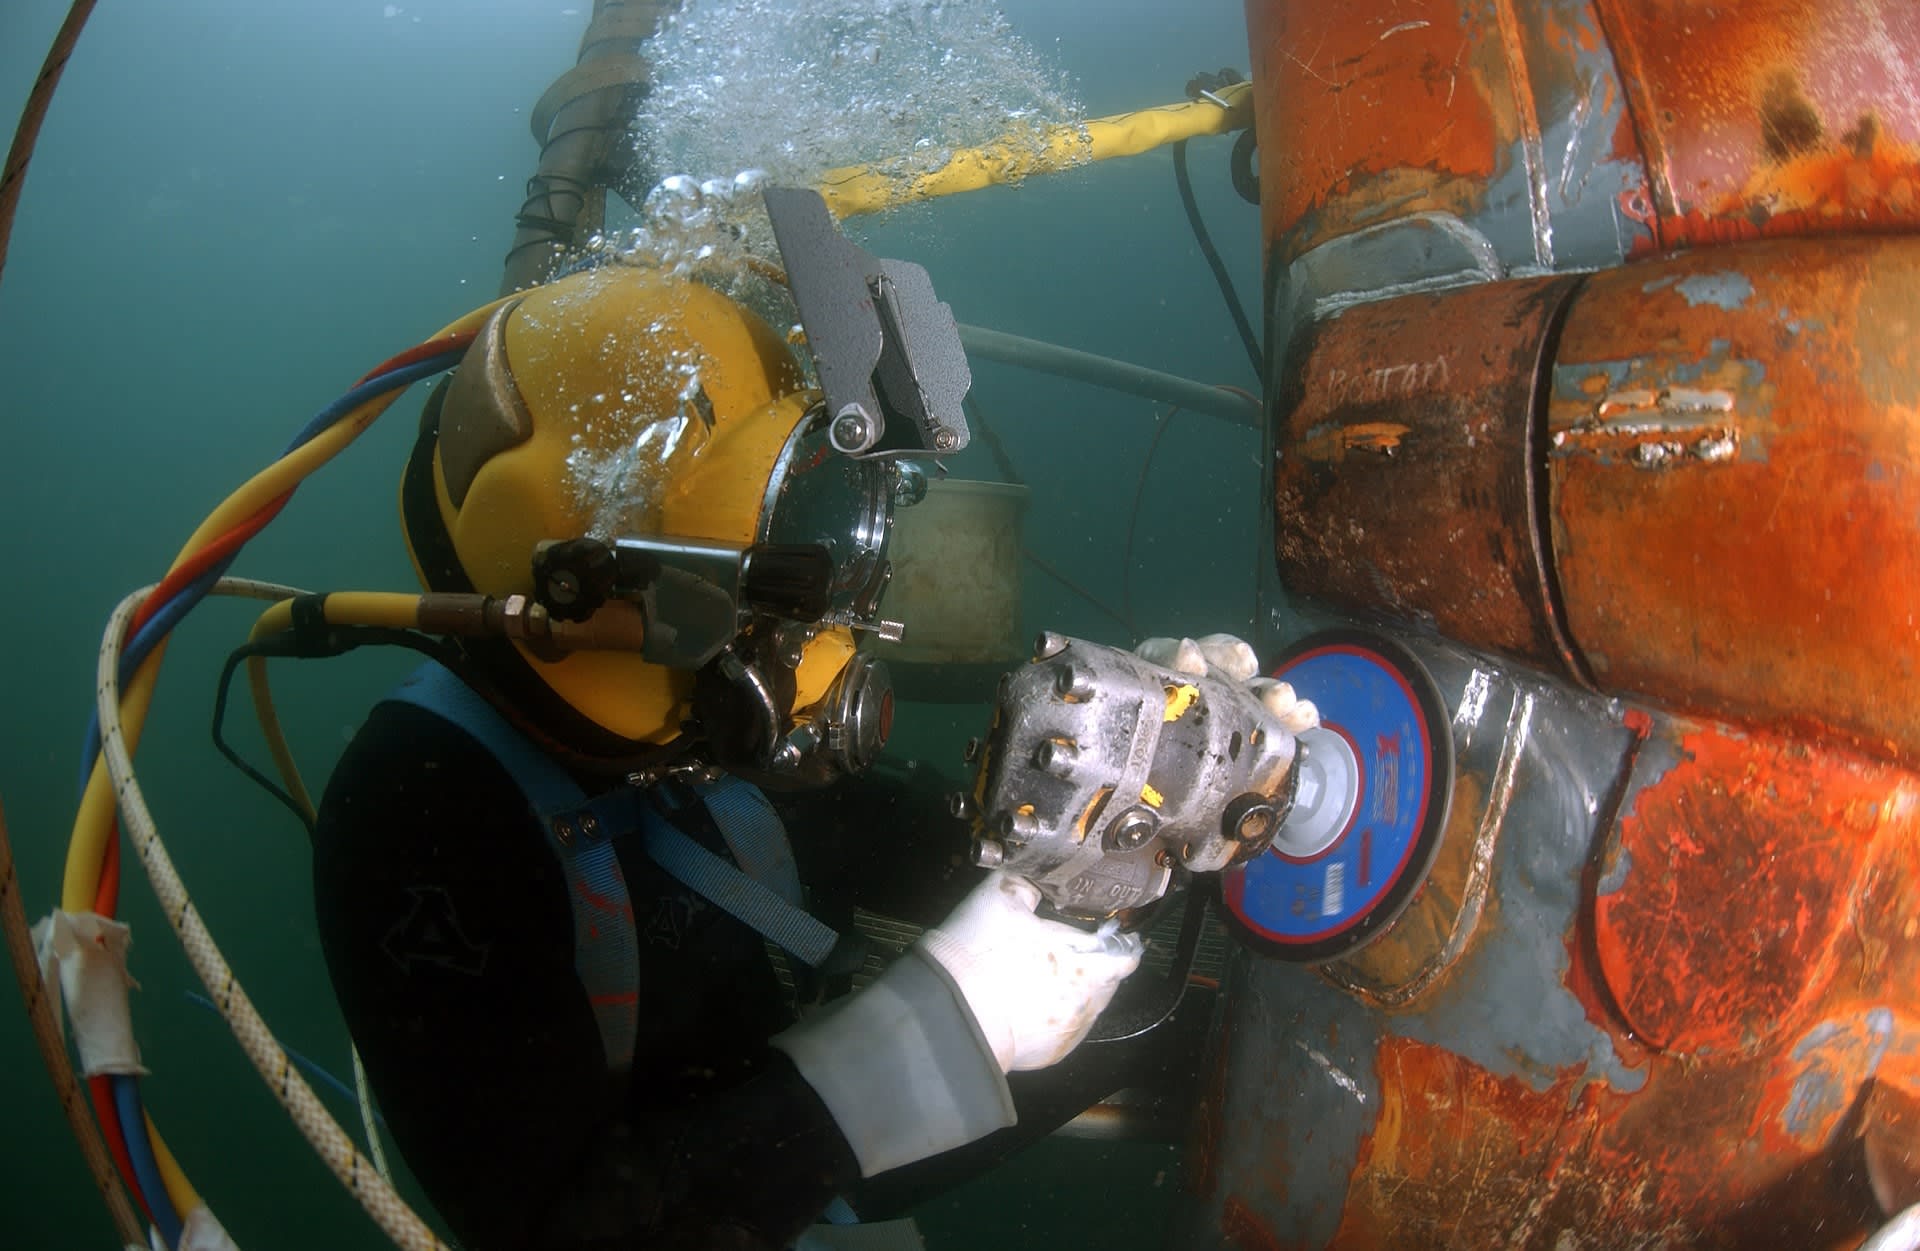 Det ble avdekket stor risiko for arbeidsulykker ved tilsyn hos dykkerbedrifter